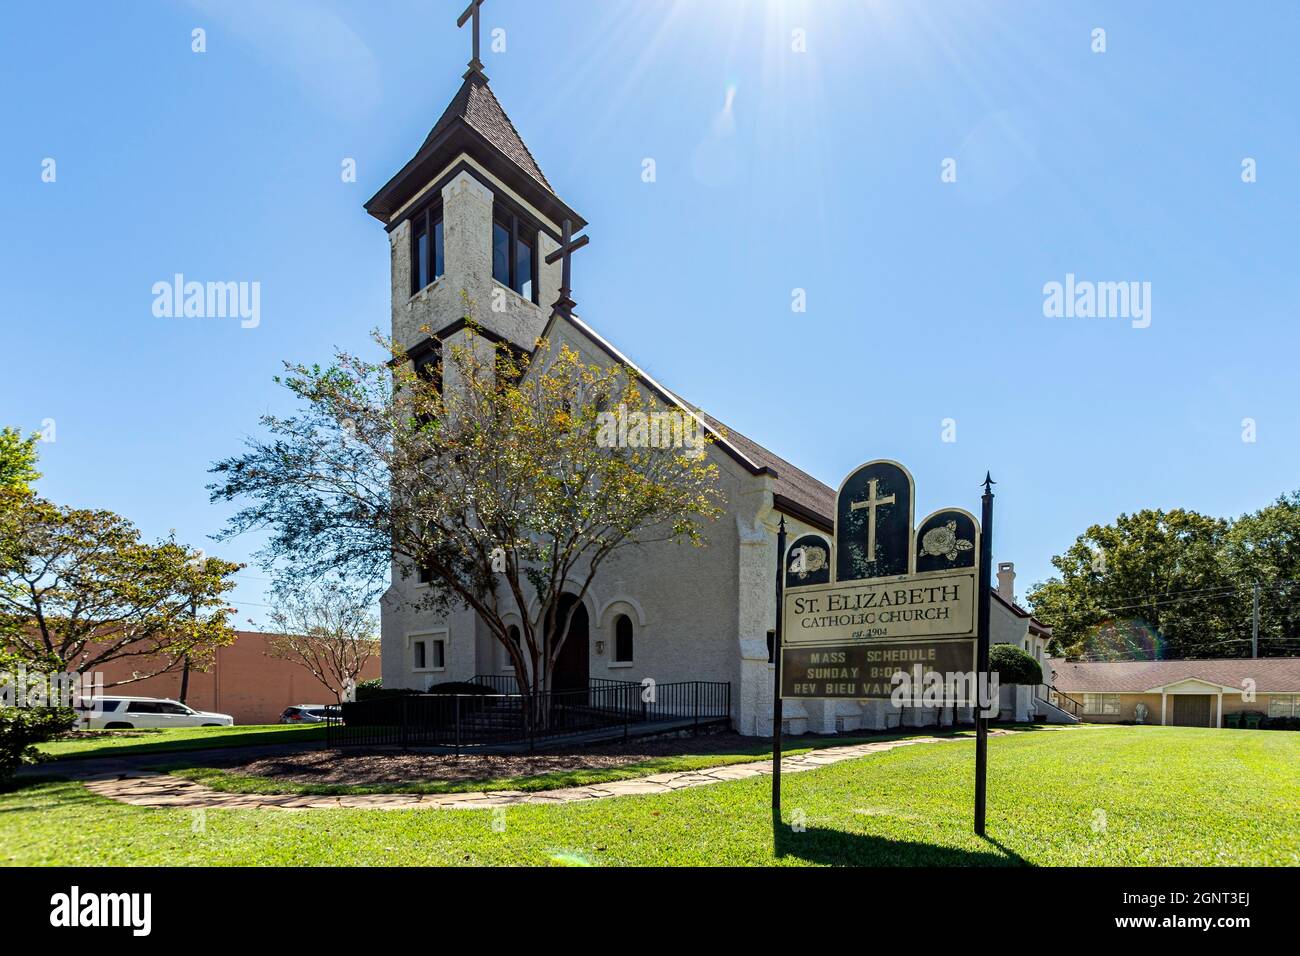 Greenville, Alabama, USA - 24. September 2021: Die katholische Kirche St. Elizabeth im historischen Stadtteil Greenville wurde 1904 von der libanesischen Ca Stockfoto